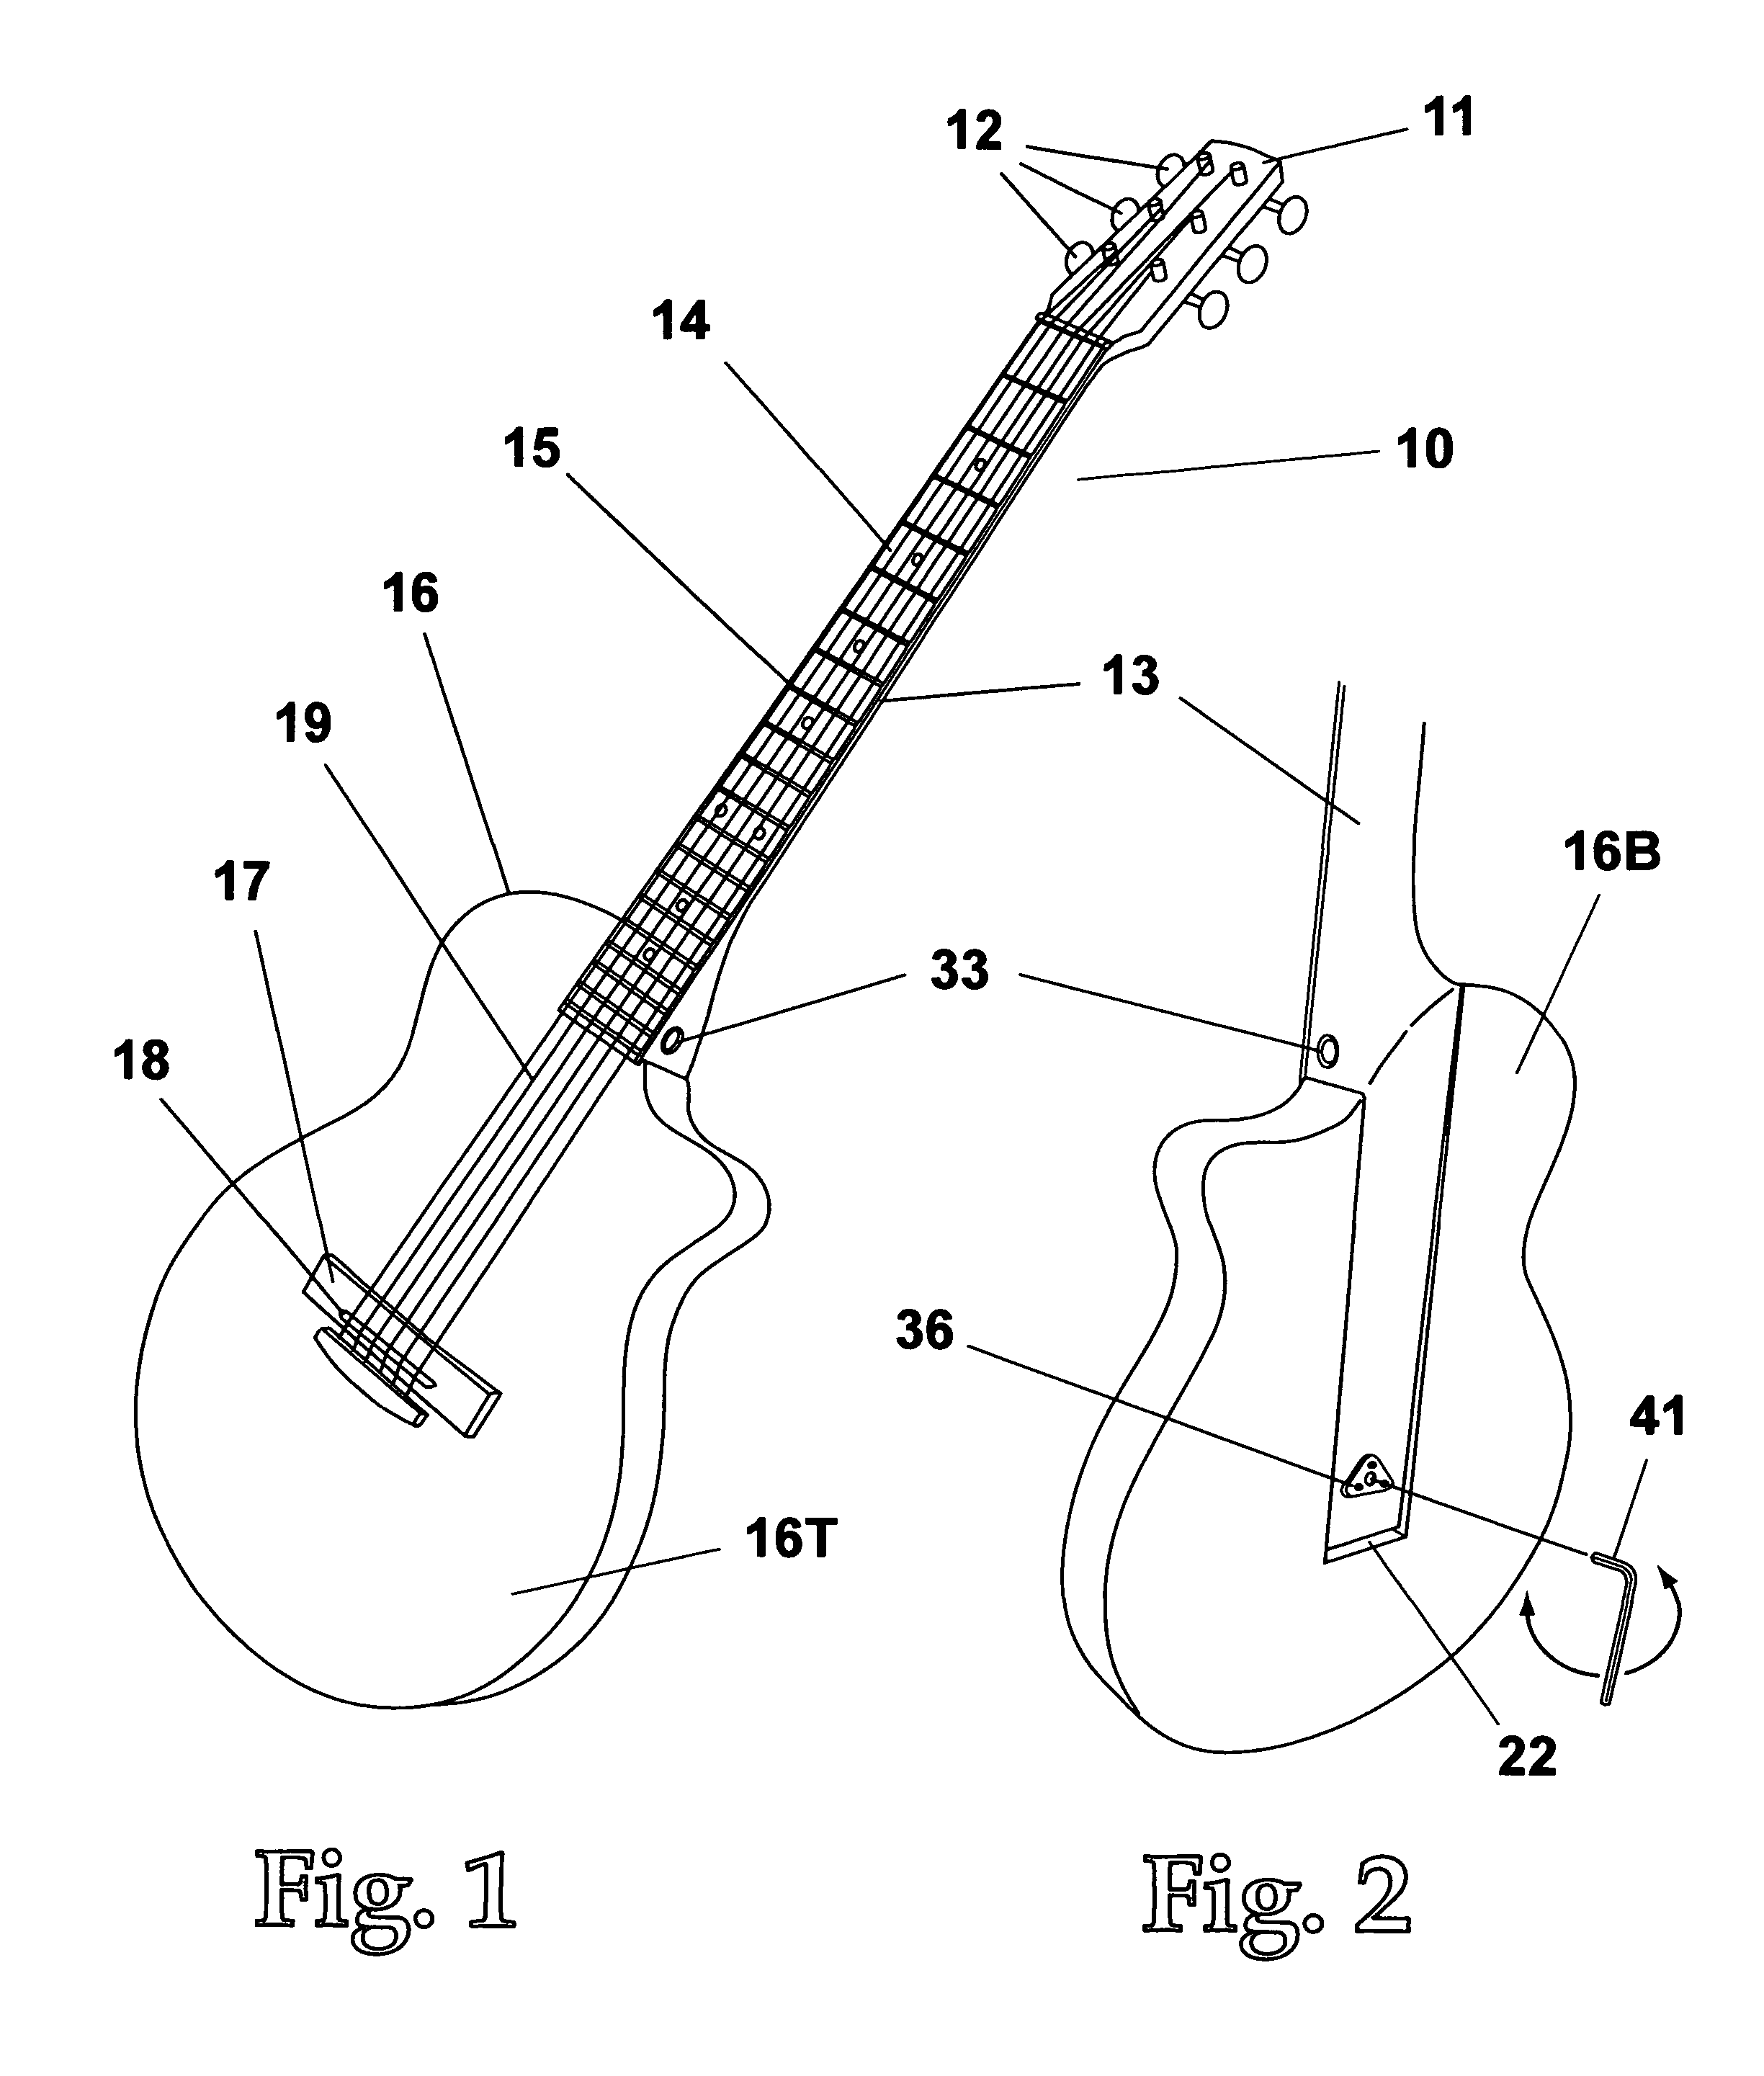 Stringed instrument string action adjustment